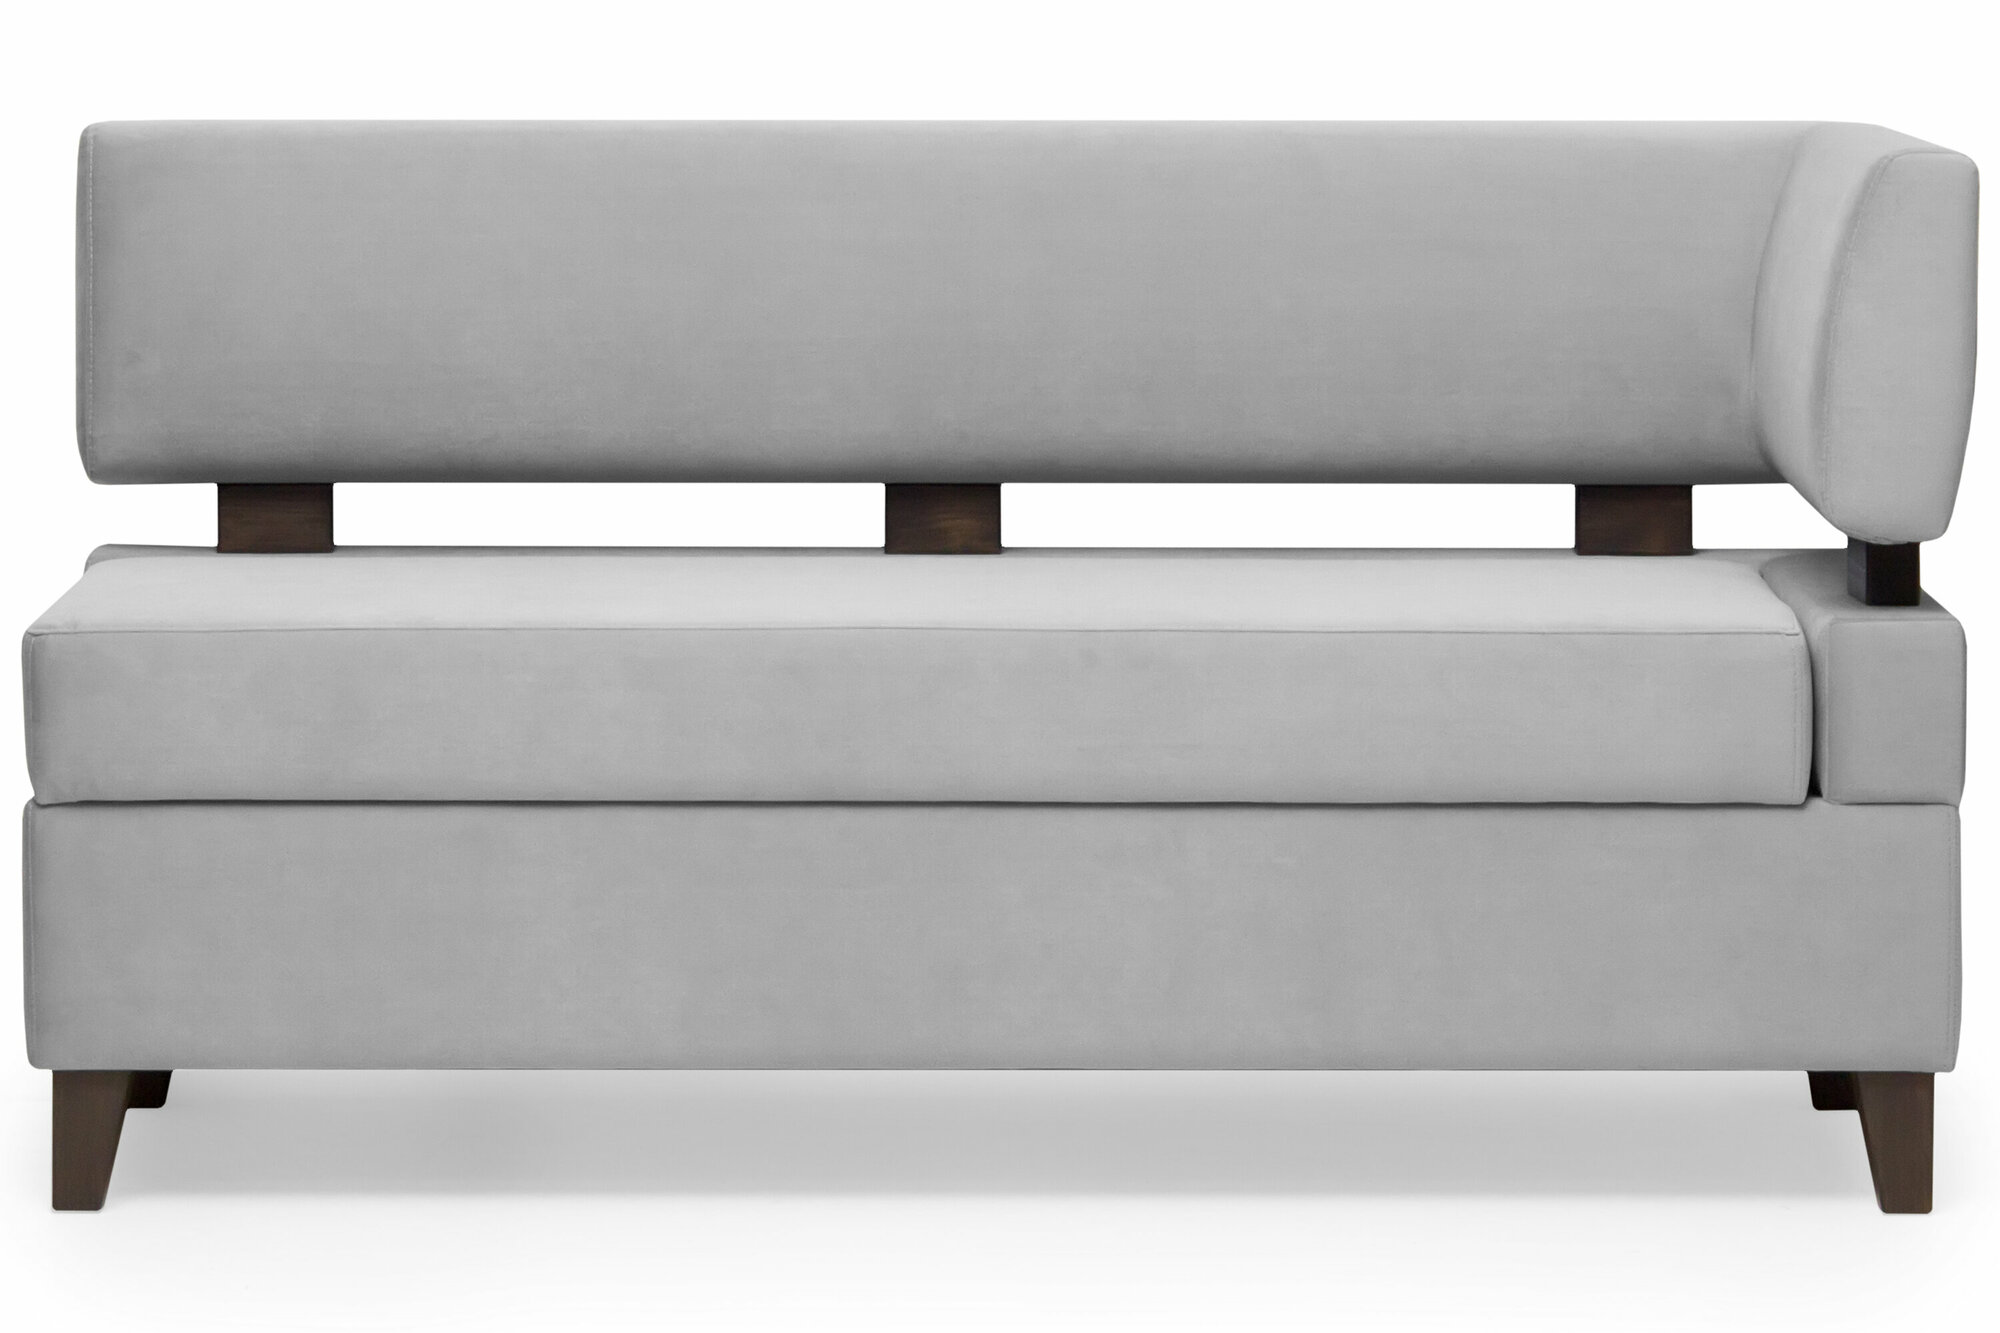 Прямой диван для кухни Свен 115 см с боковой спинкой и ящиком - серый, правый